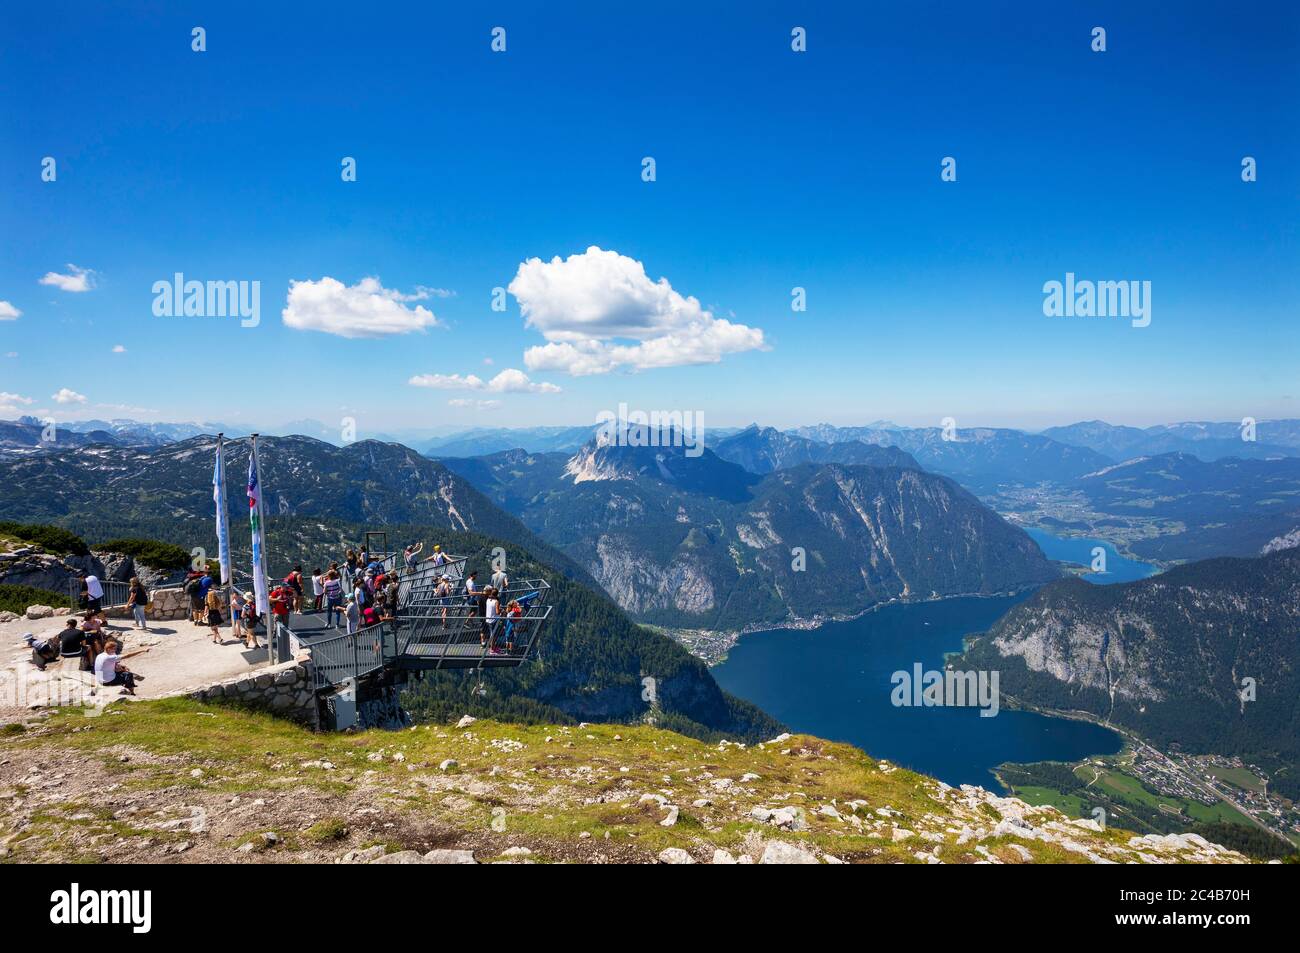 Vista dal punto di osservazione a cinque dita verso il lago Hallstatt, Krippenstein, Obertraun, Hallstatt, Salzkammergut, Austria superiore Foto Stock